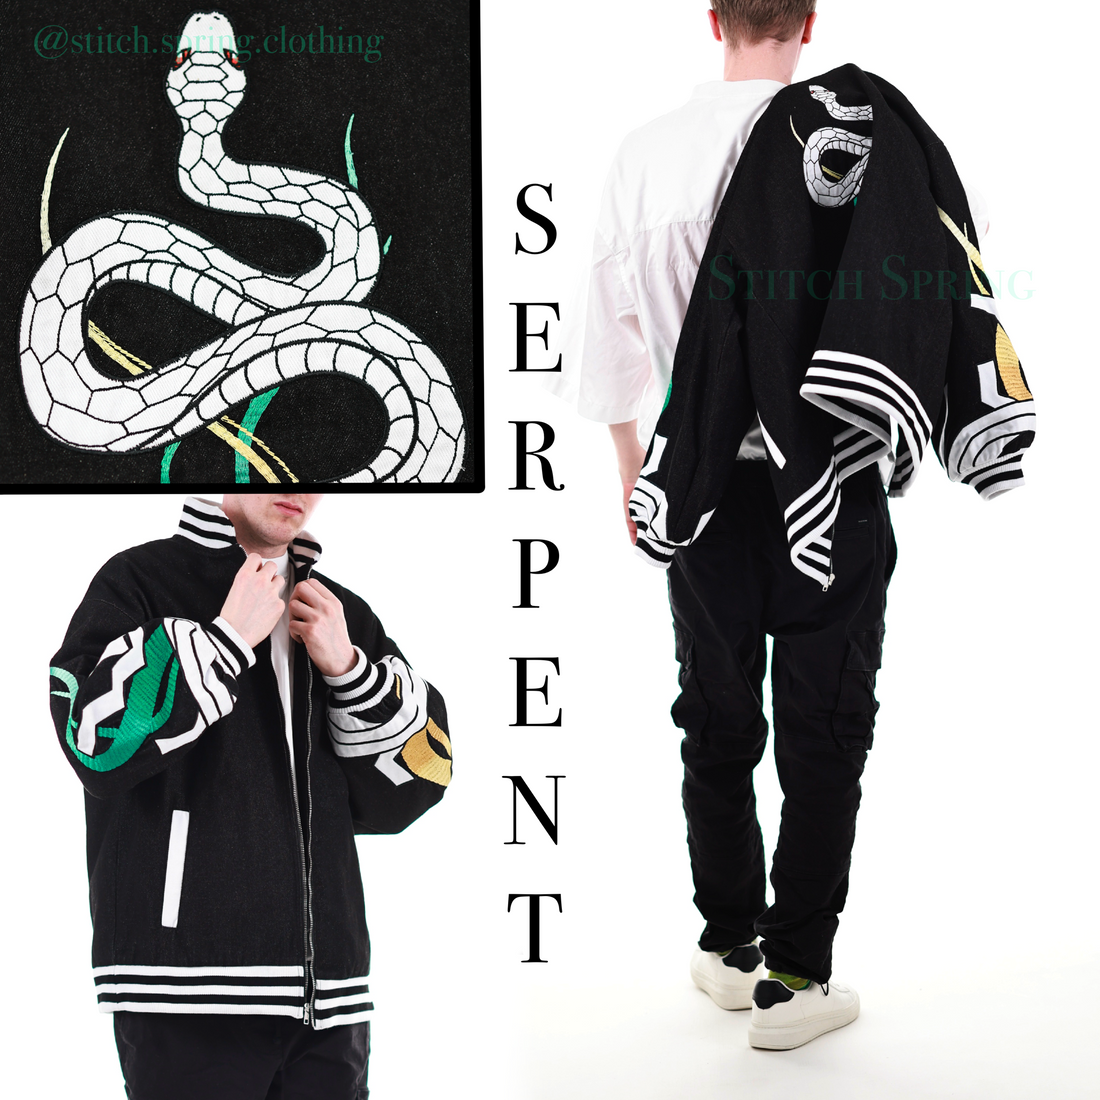 Serpent Denim Jacket Preorder